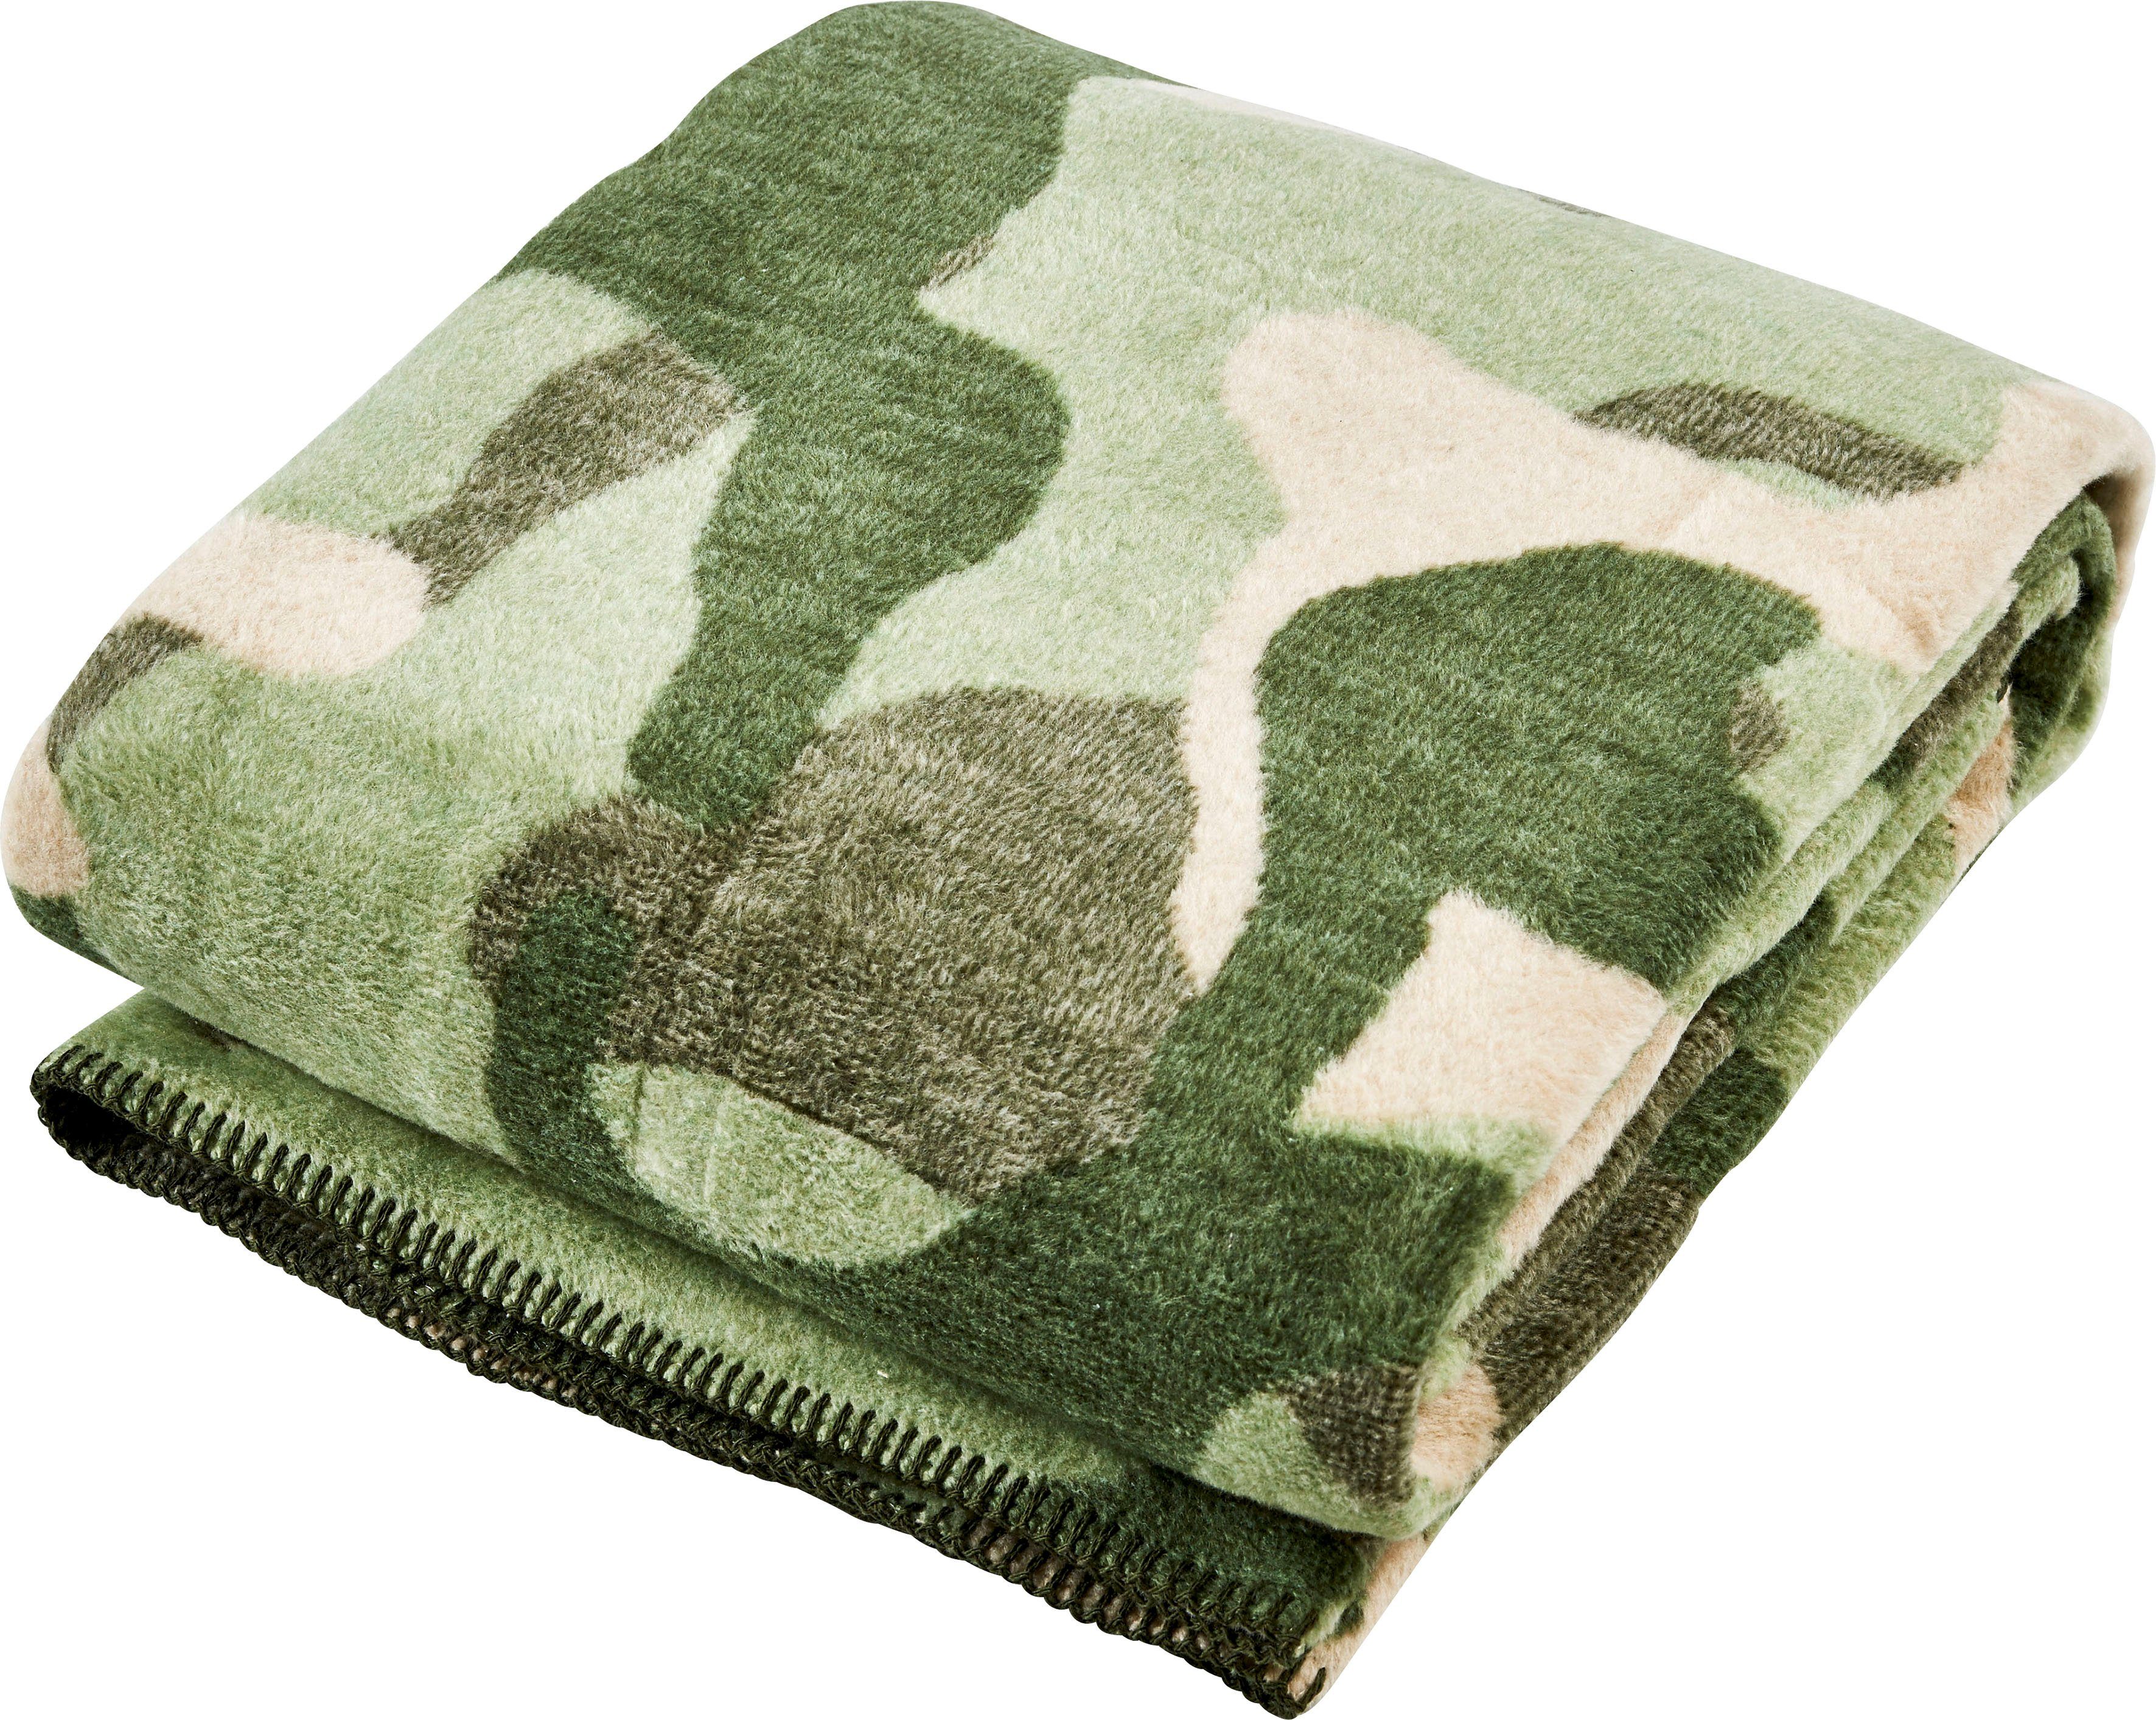 Wohndecke Camouflage, Kuscheldecke einfassender khaki/grün/beige mit Wohndecke Ziernaht, done.®